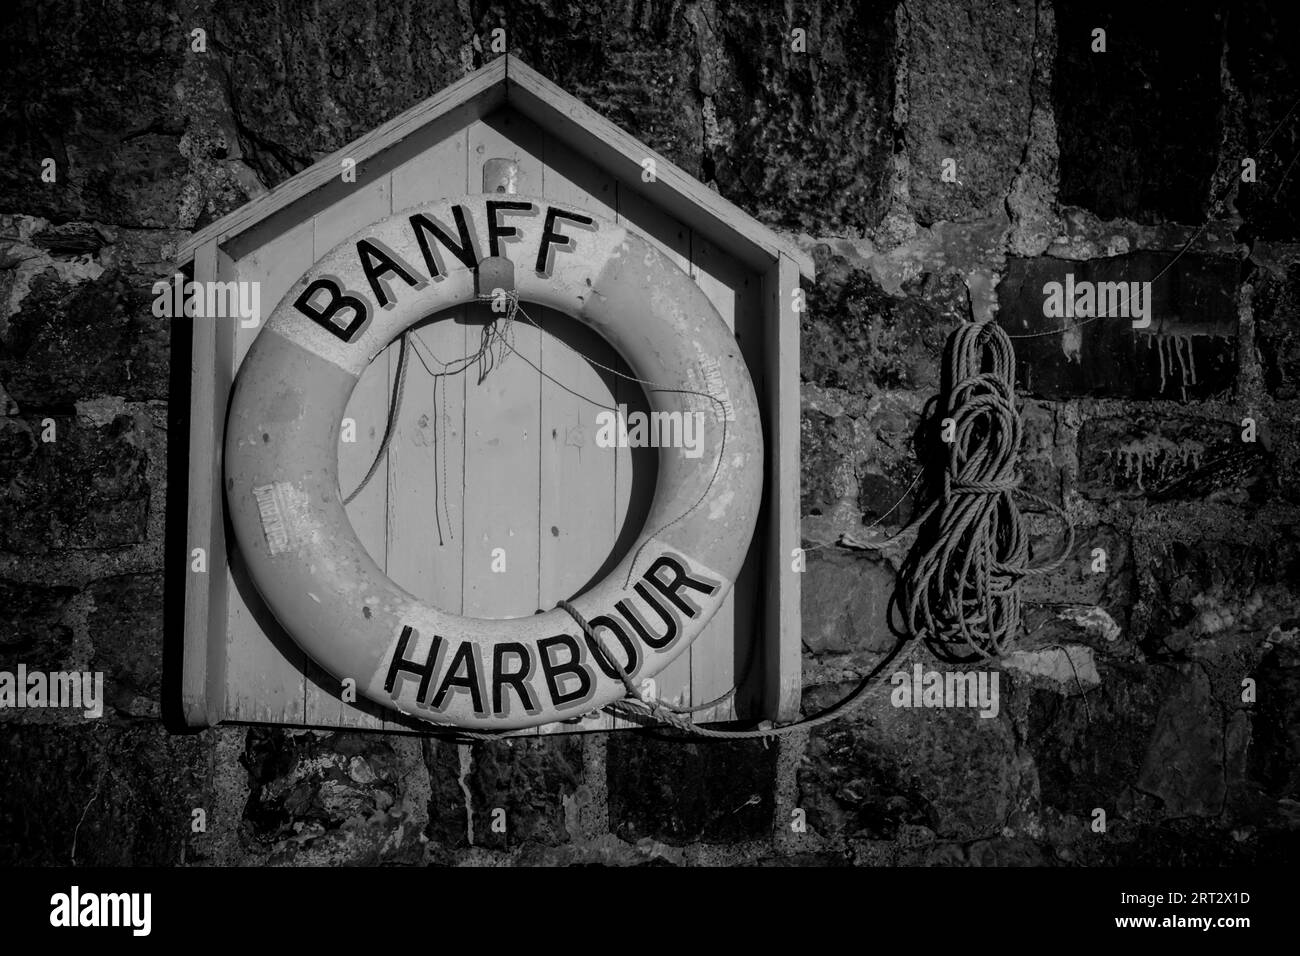 banff harbour aberdeenshire scotland infrared Stock Photo